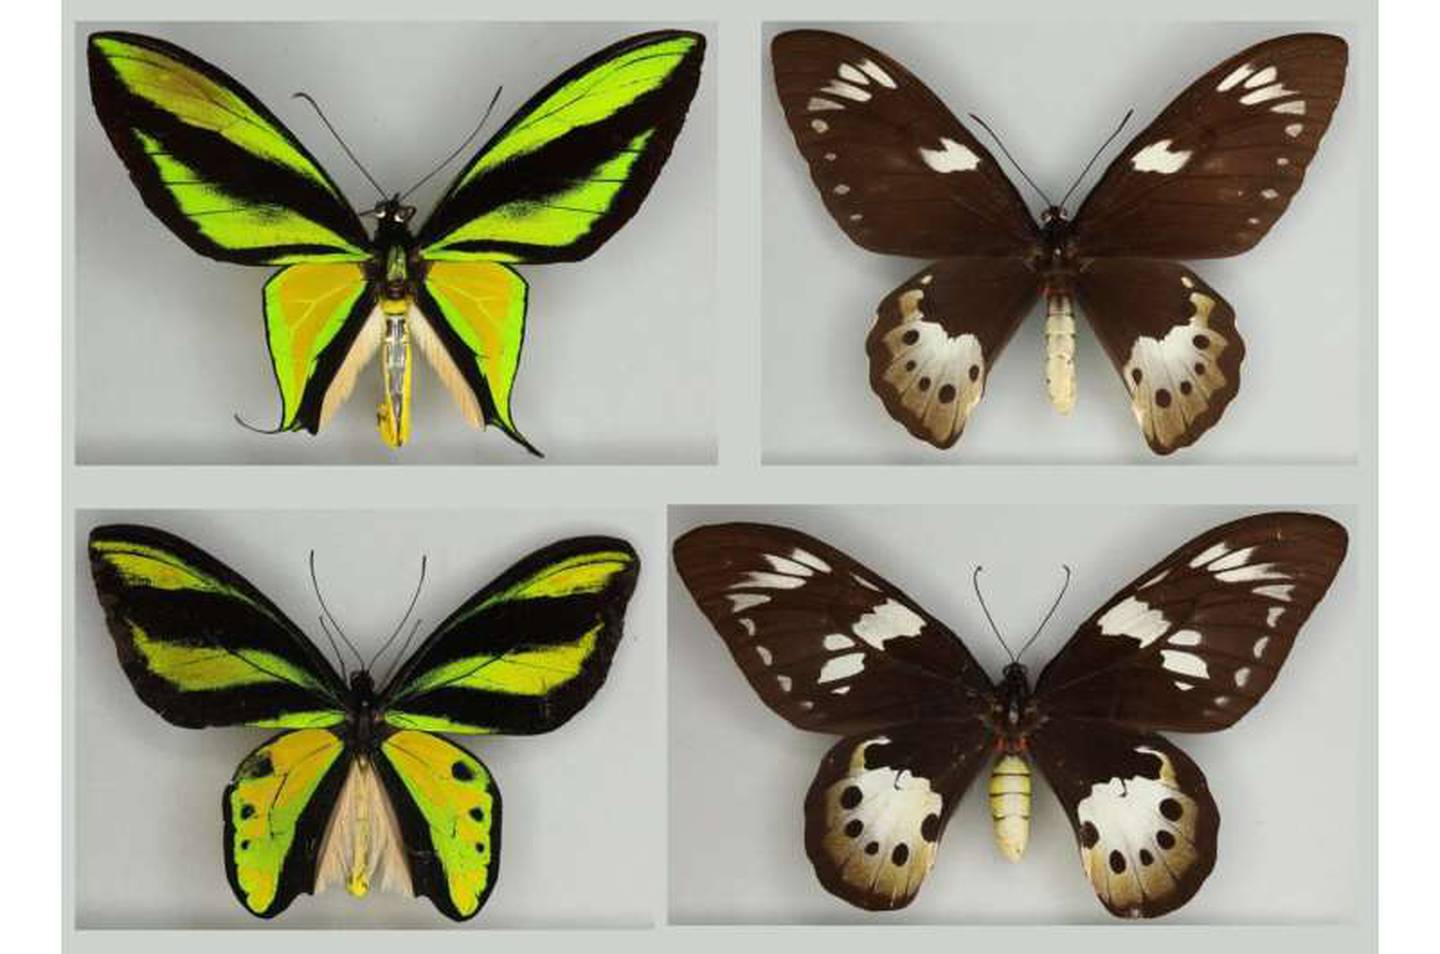 Innovador estudio con inteligencia artificial revela la evolución de mariposas hembra, aclarando un debate histórico entre Darwin y Wallace.